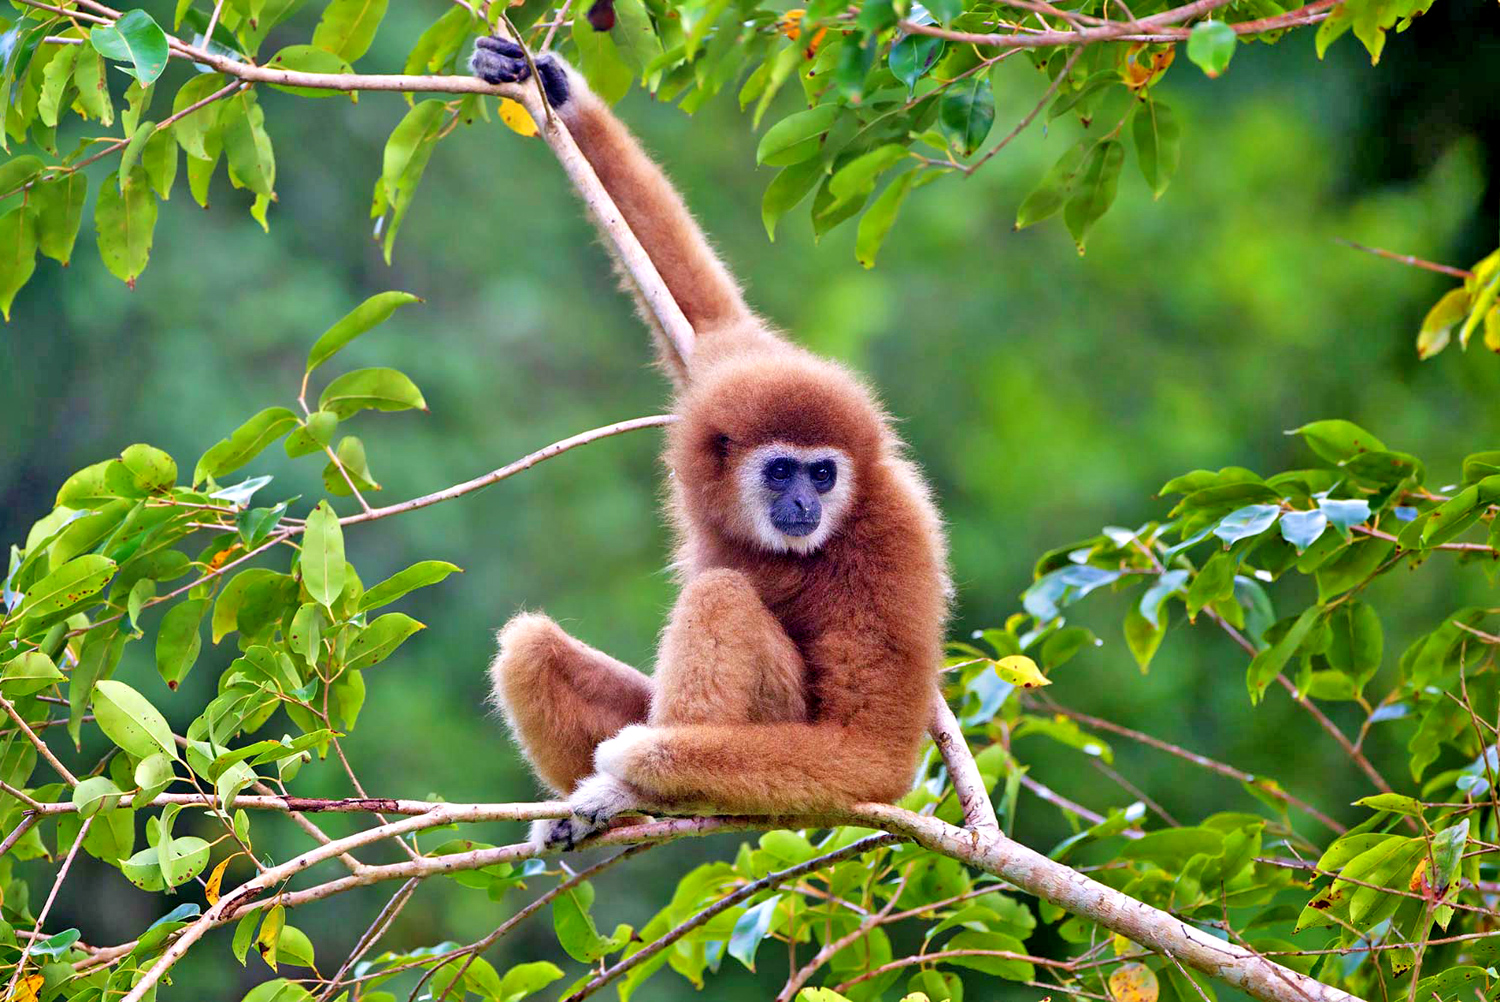 Avvistamenti dei Gibboni durante il trekking al Parco Nazionale di Khao Yai, Khorat, Thailandia